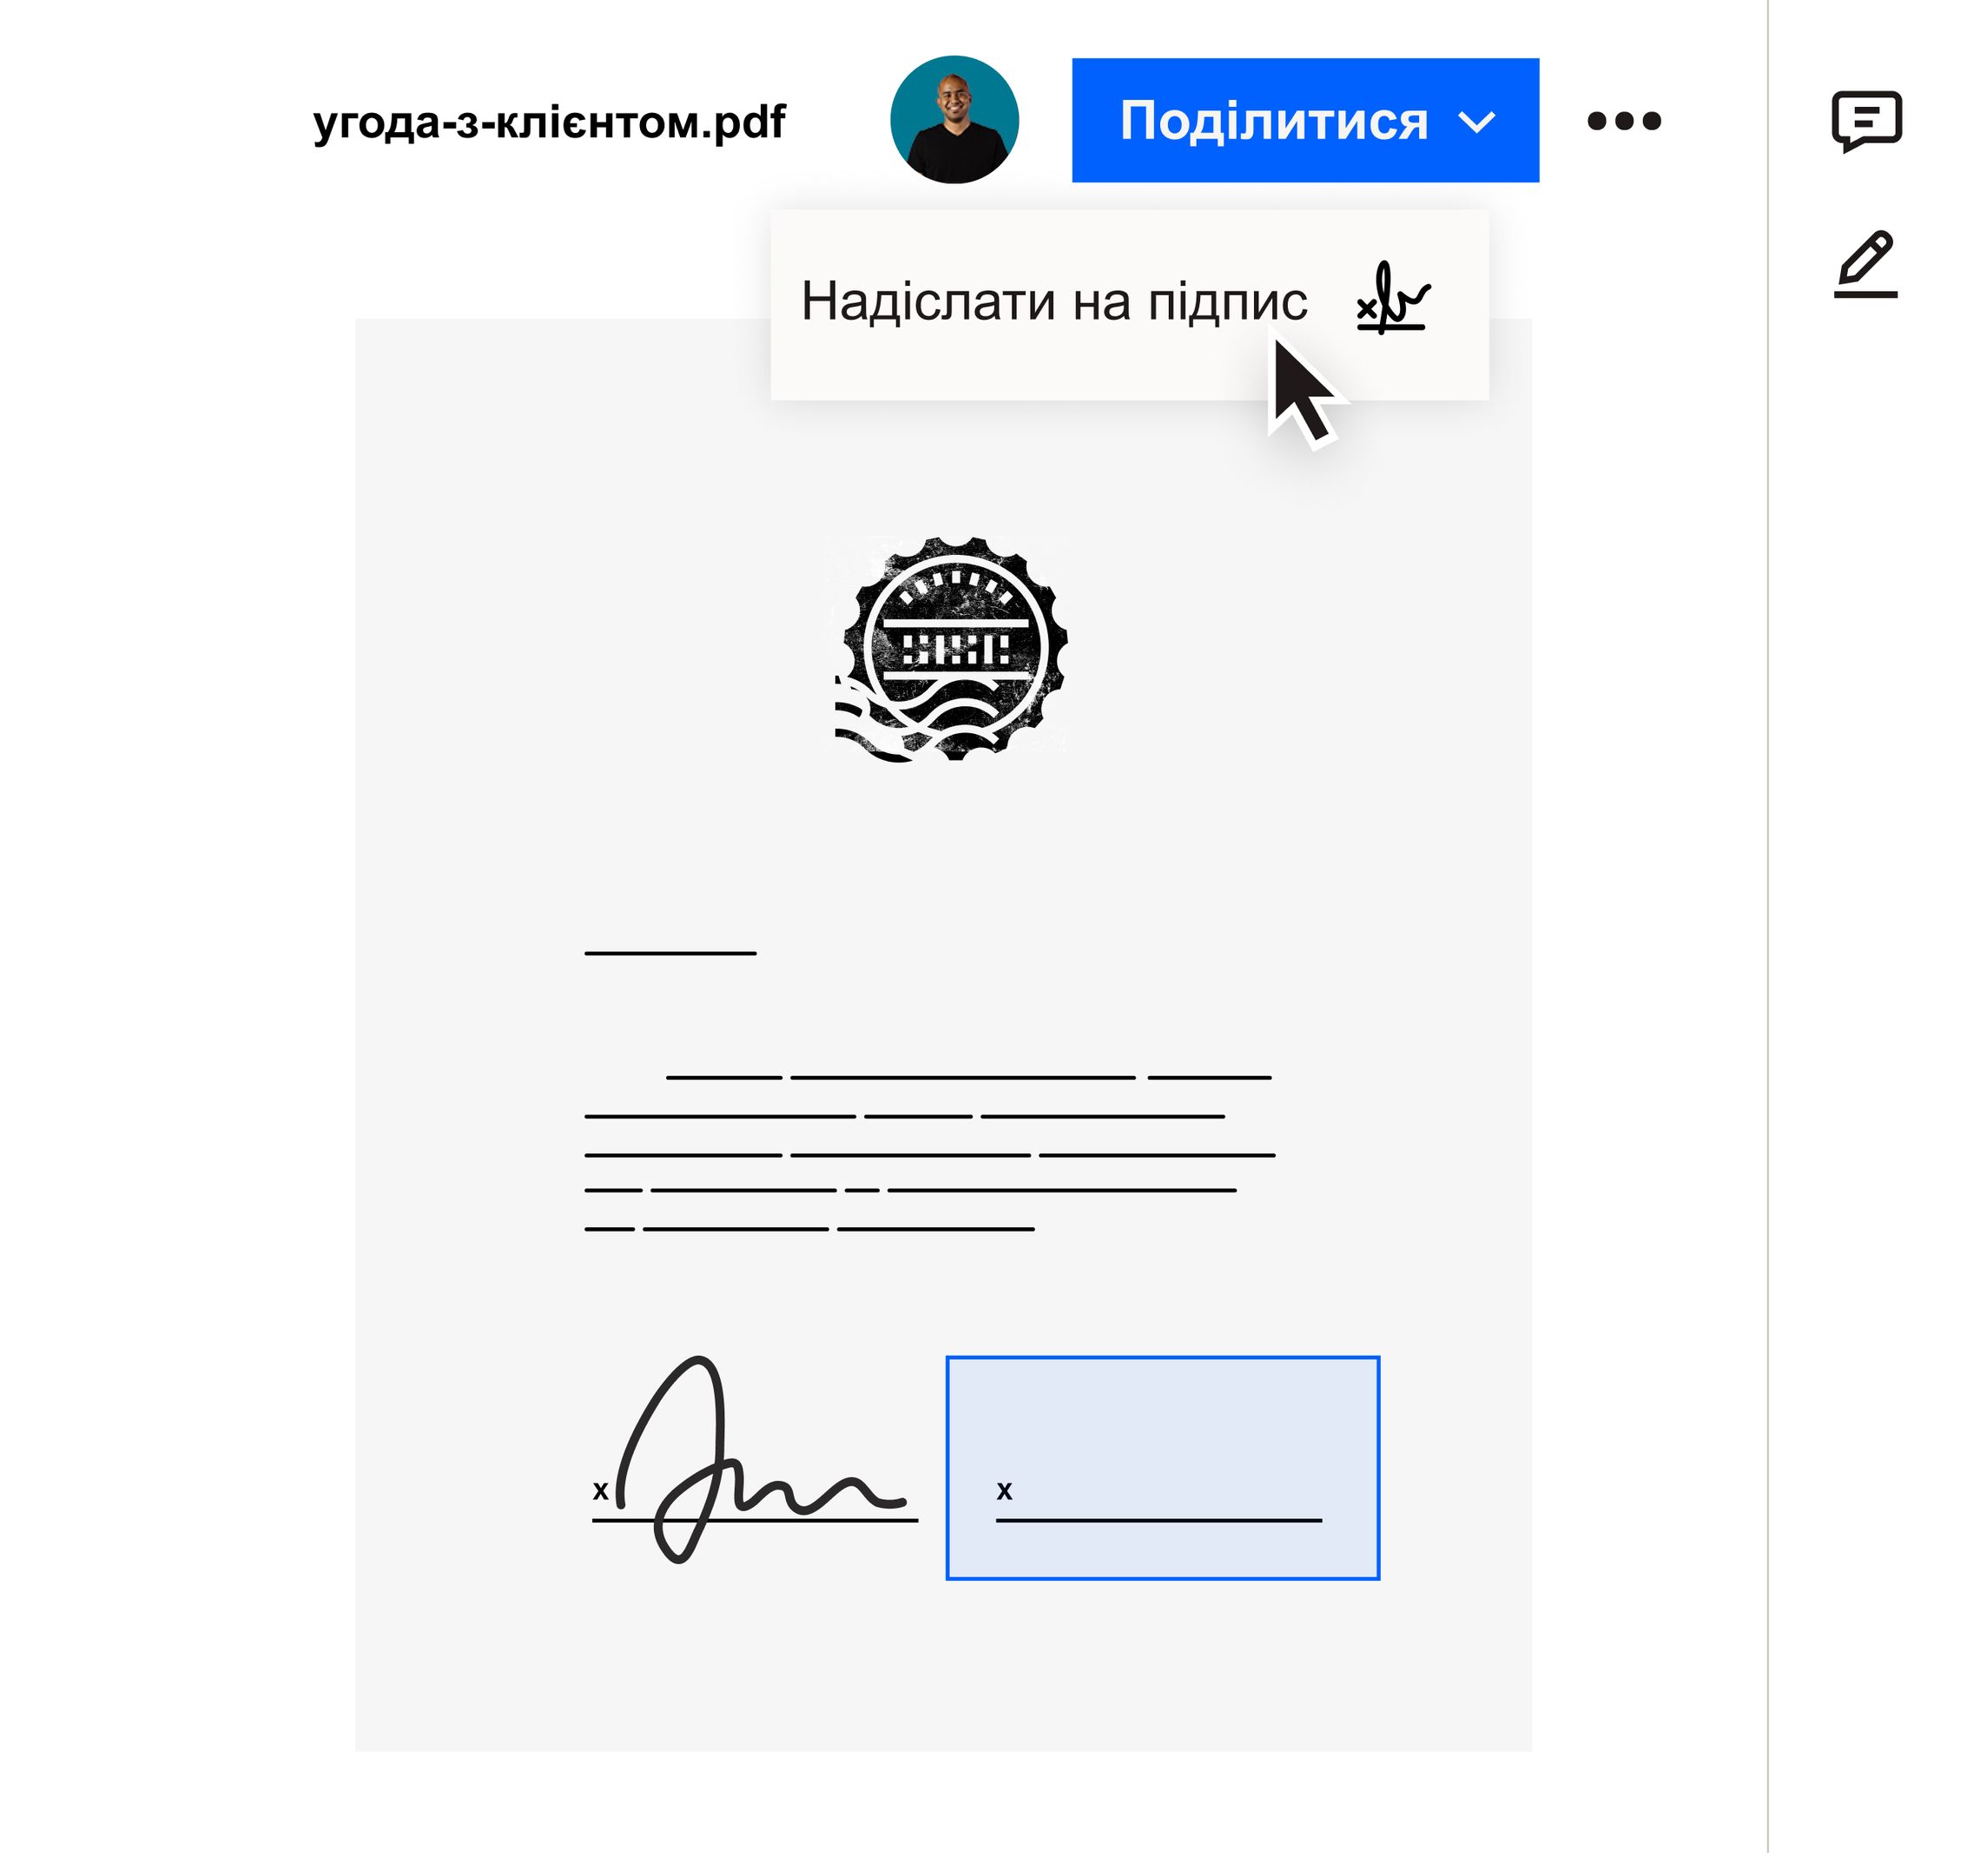 Користувач клацає пункт «Надіслати на підпис» у меню «Поділитися» в інтерфейсі Dropbox